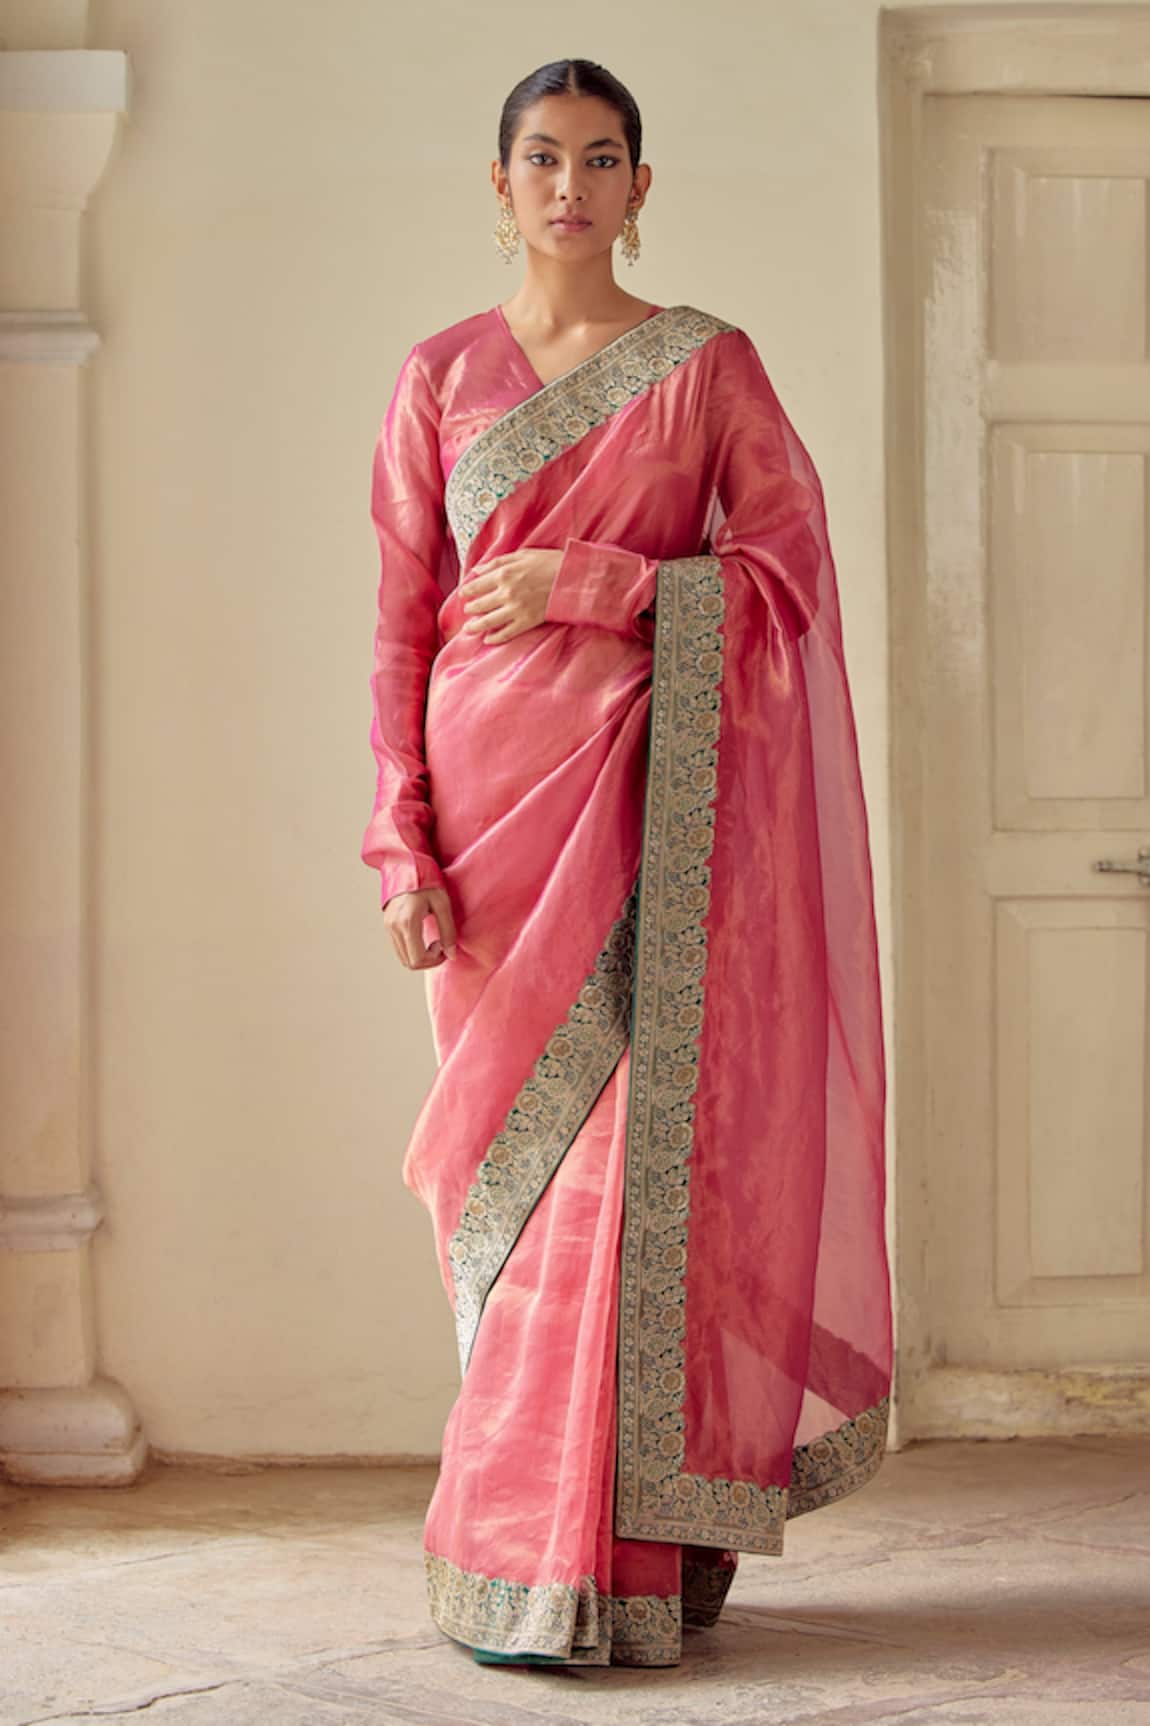 Mimamsaa Sandali Tissue Woven Saree With Blouse